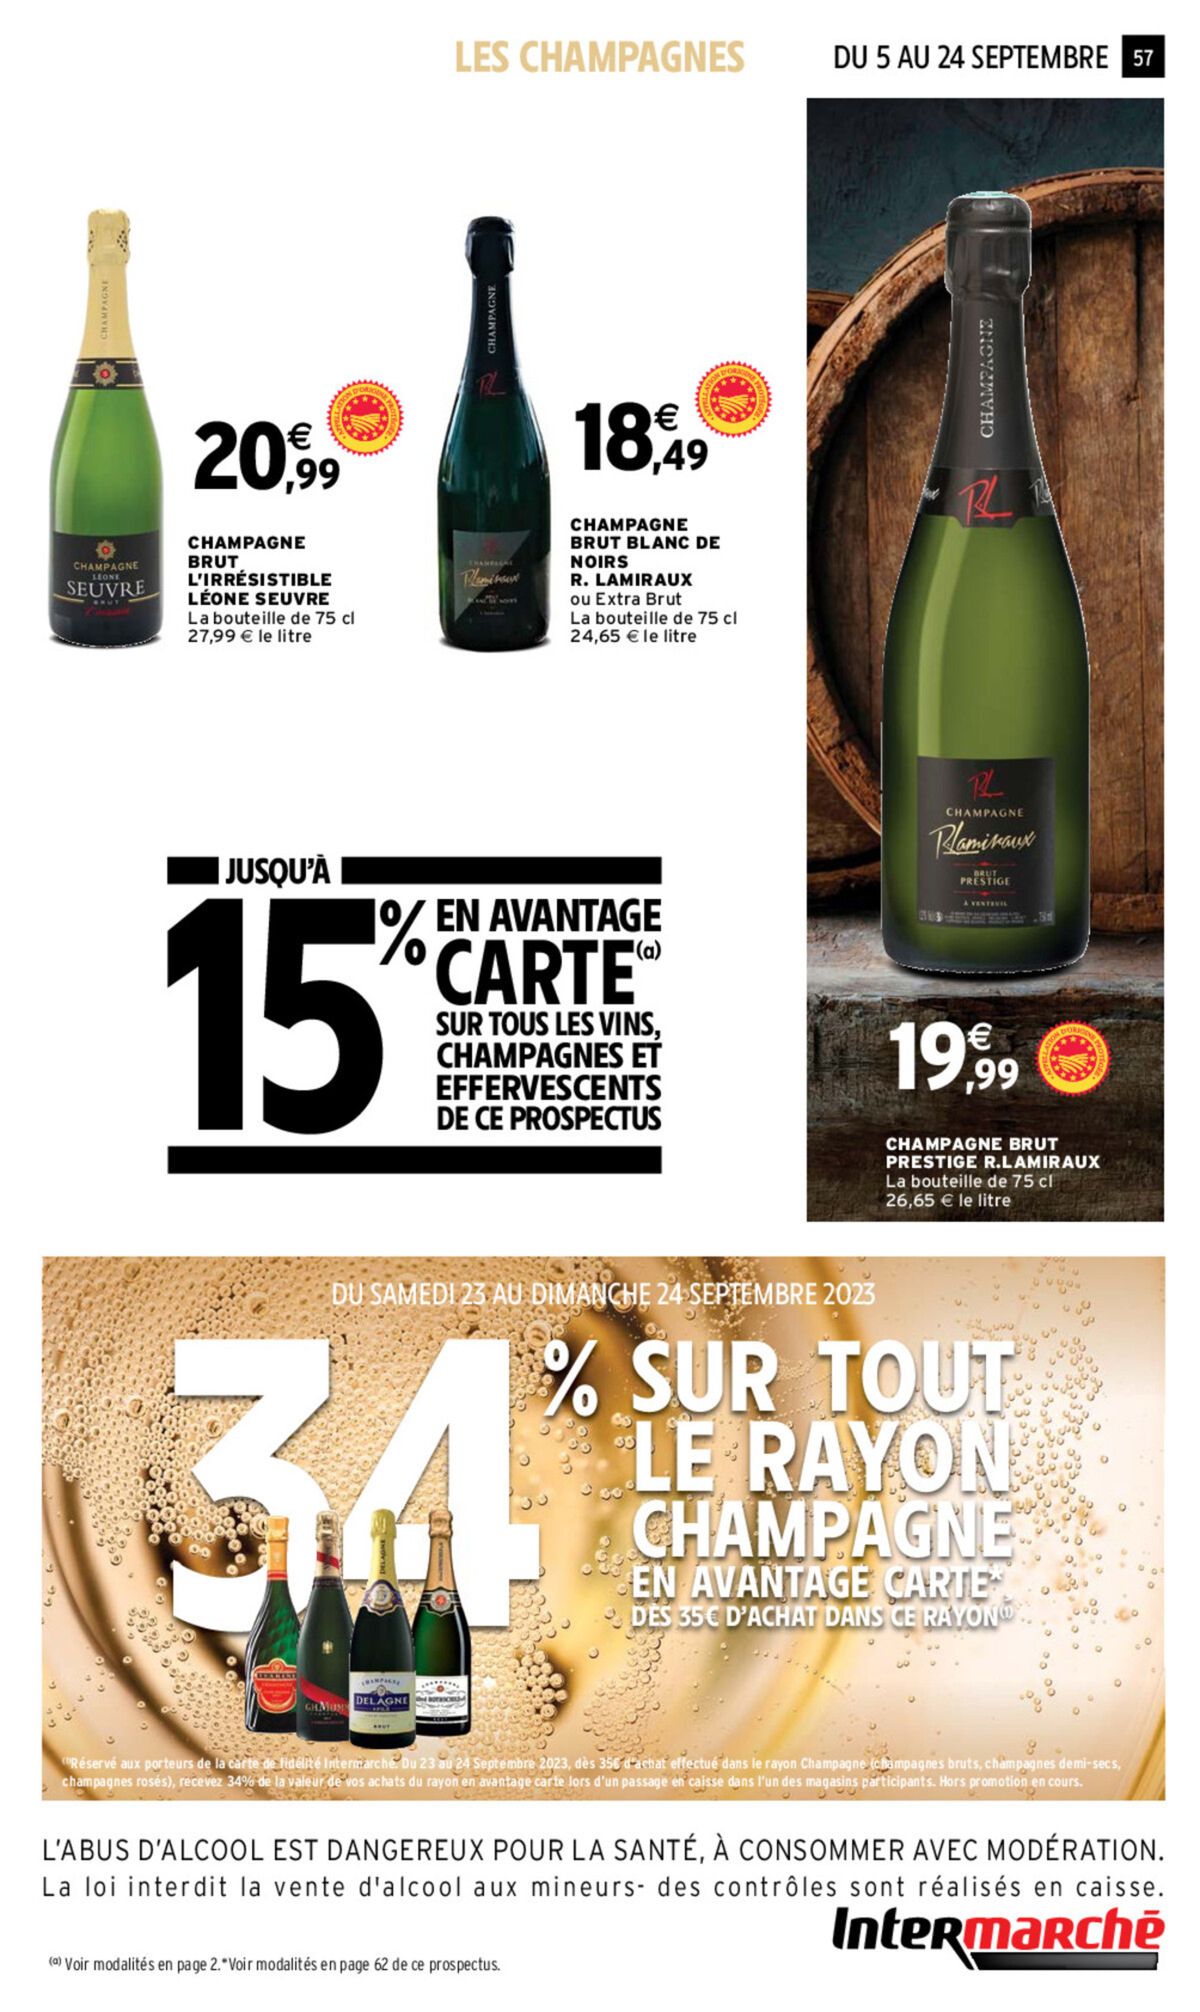 Catalogue Foire aux vins, page 00054